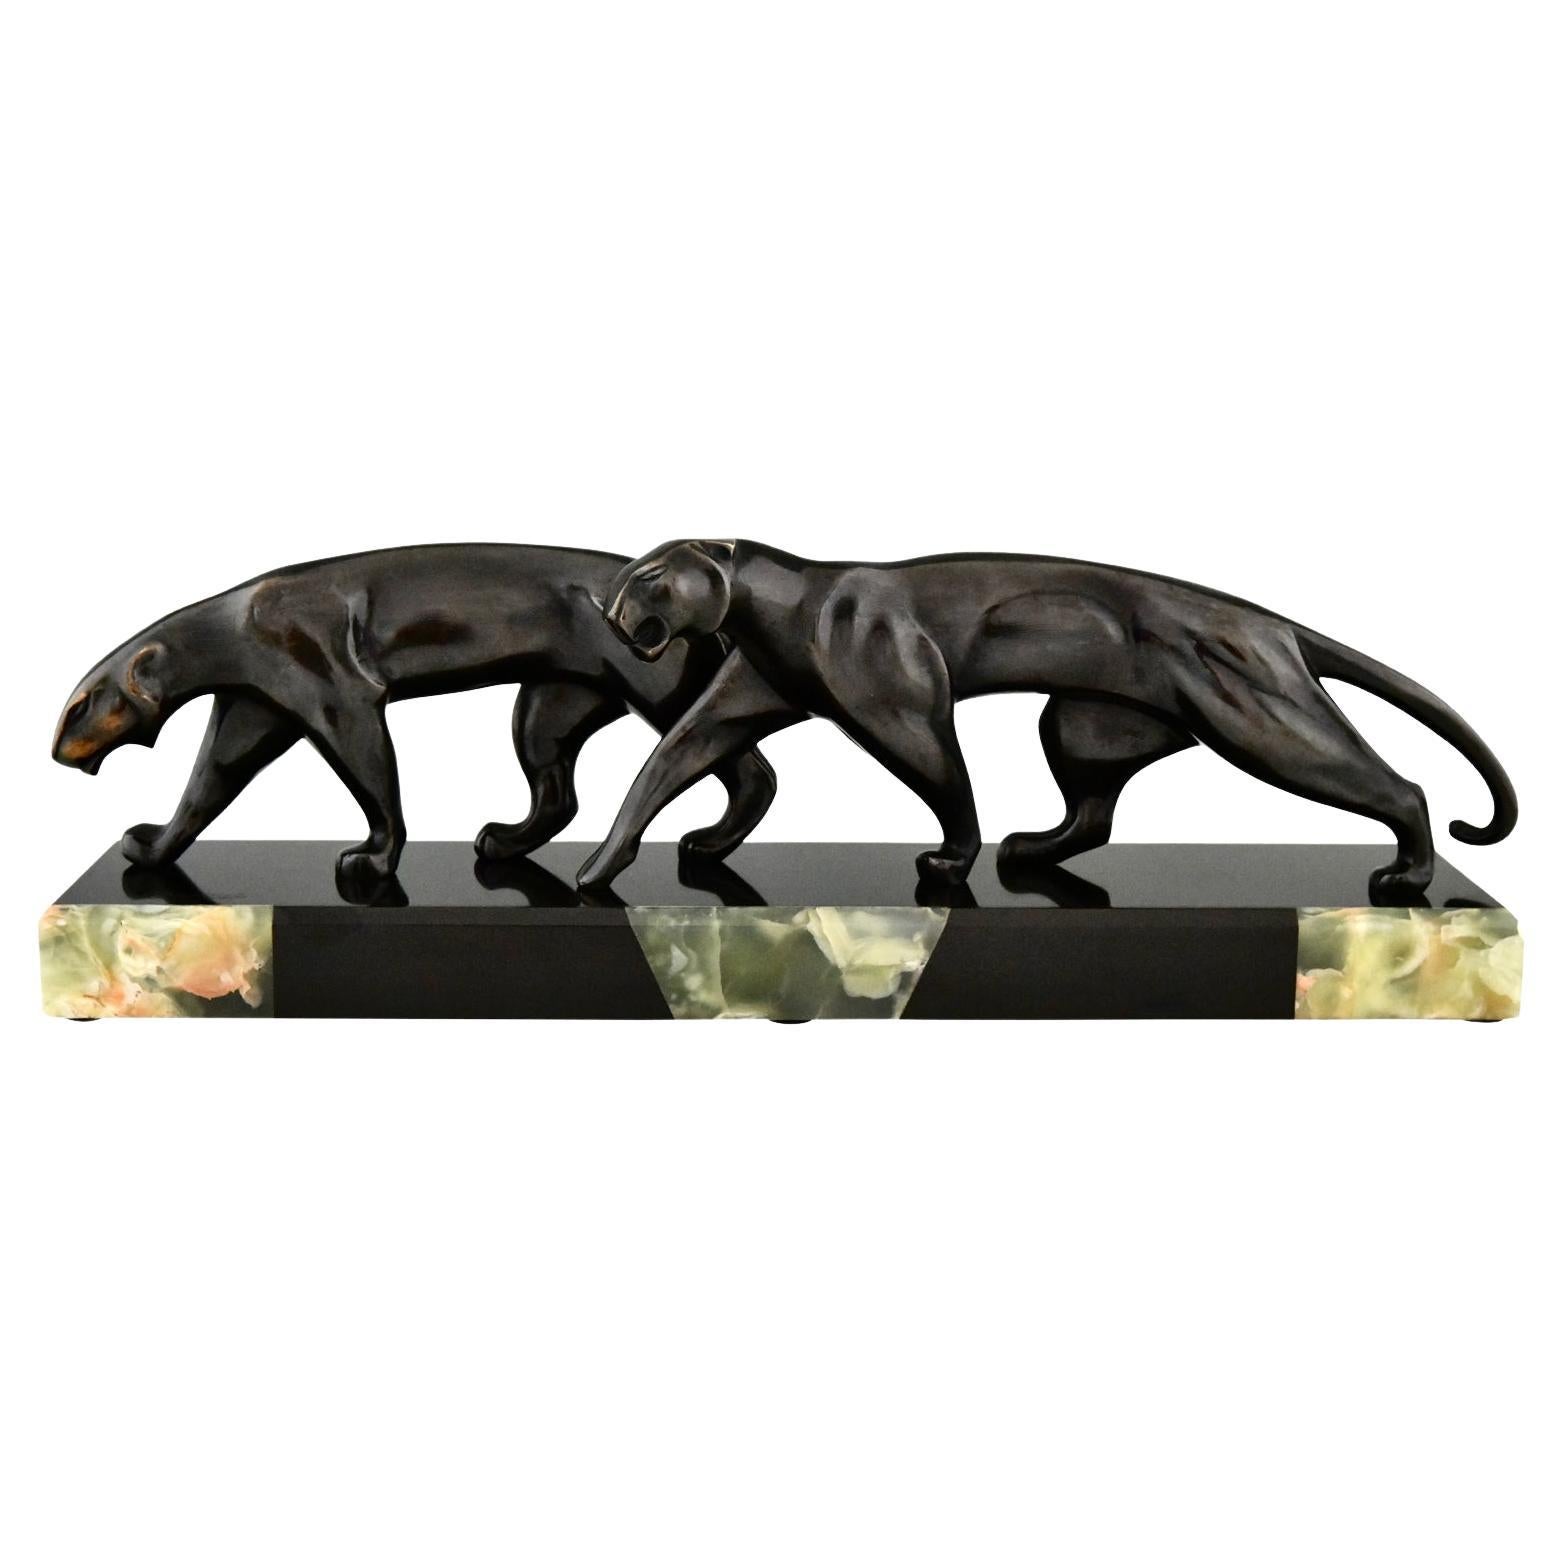 Bronzeskulptur zweier Panther im Art déco-Stil, signiert von Michel Decoux 1920